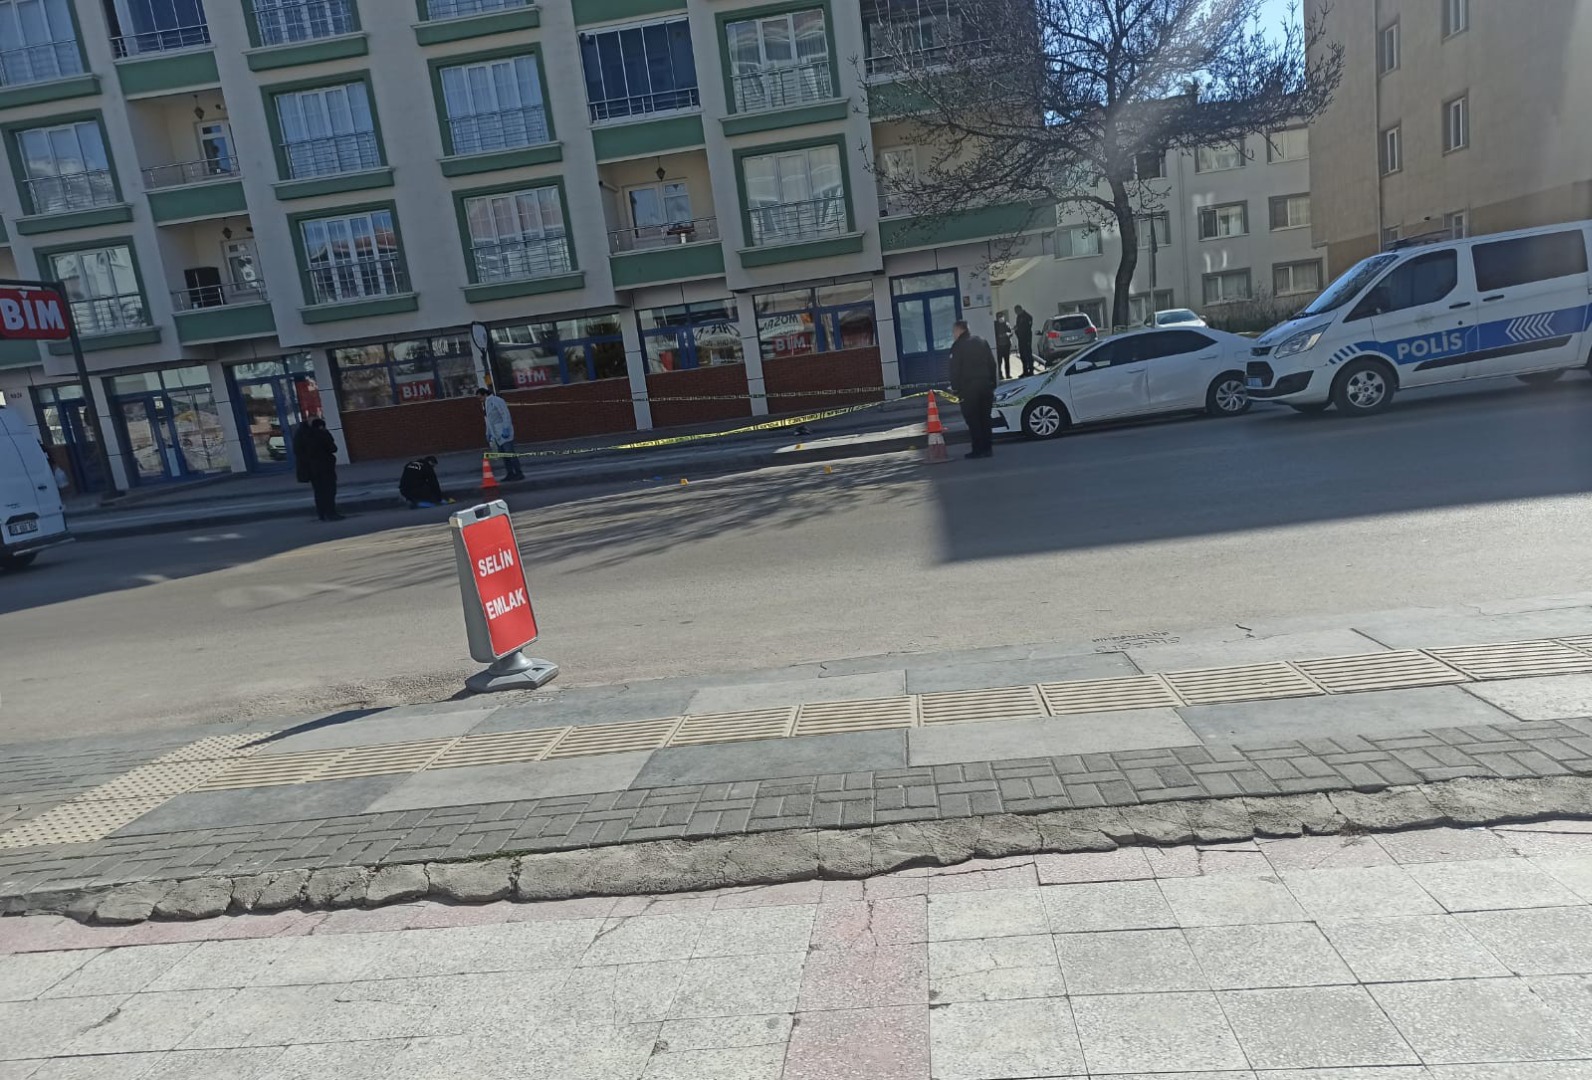 Ankara'da silahlı saldırı: 1 yaralı